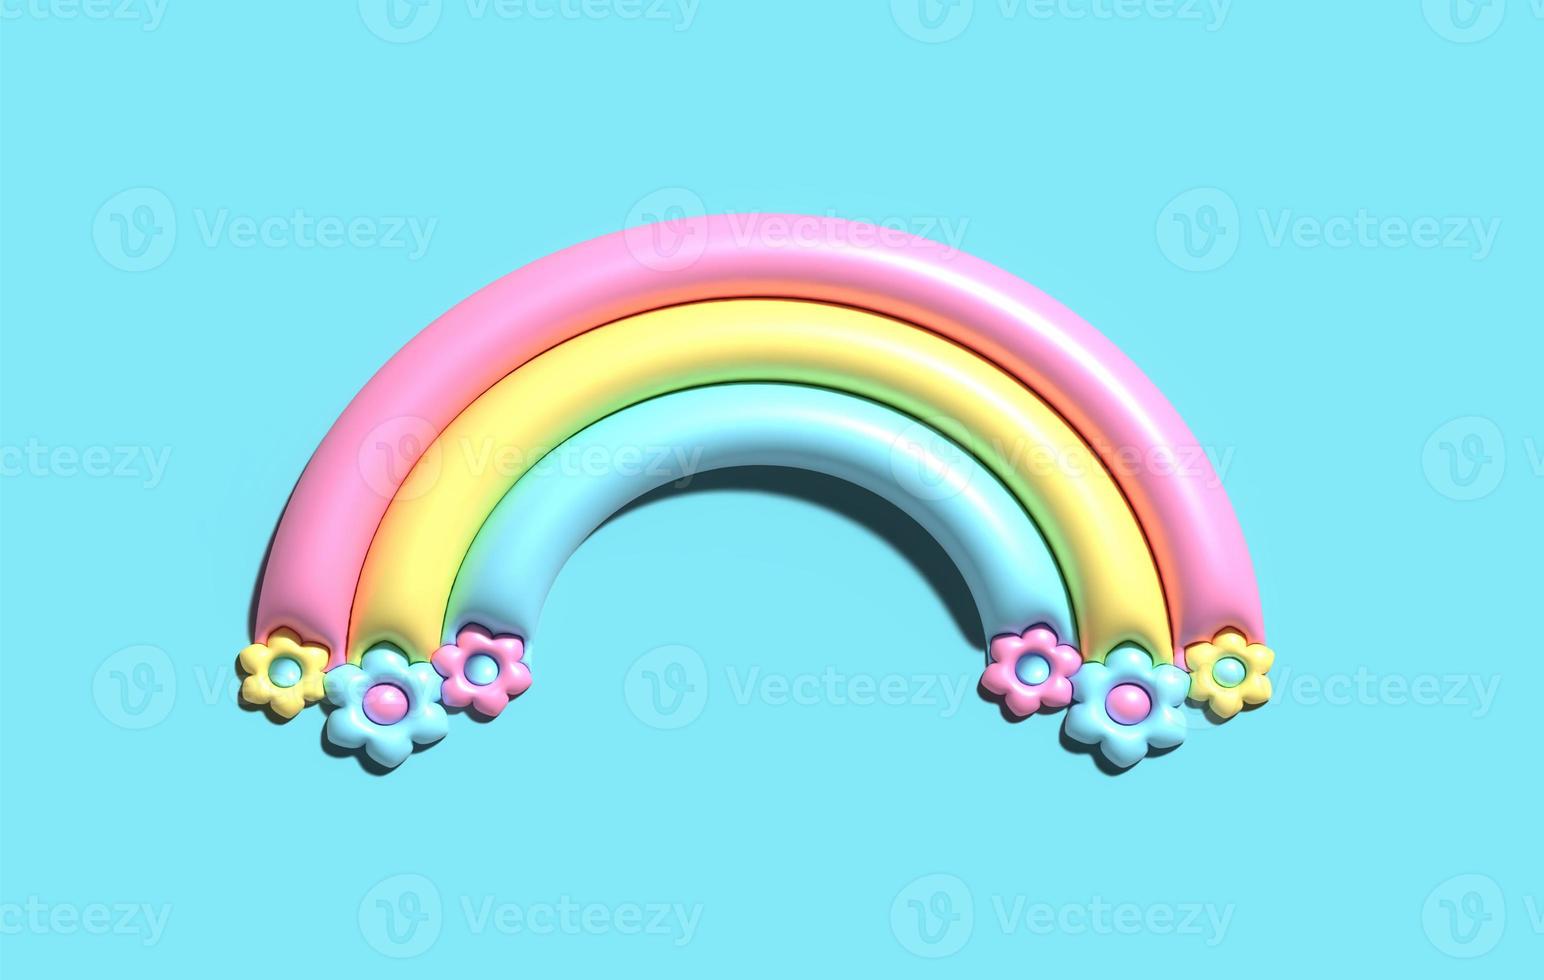 Arco iris lindo 3d. arco iris de dibujos animados con flores dulces. el arco colorido es el elemento objetos de verano, vacaciones, día feliz. ilustración aislada sobre fondo azul. foto